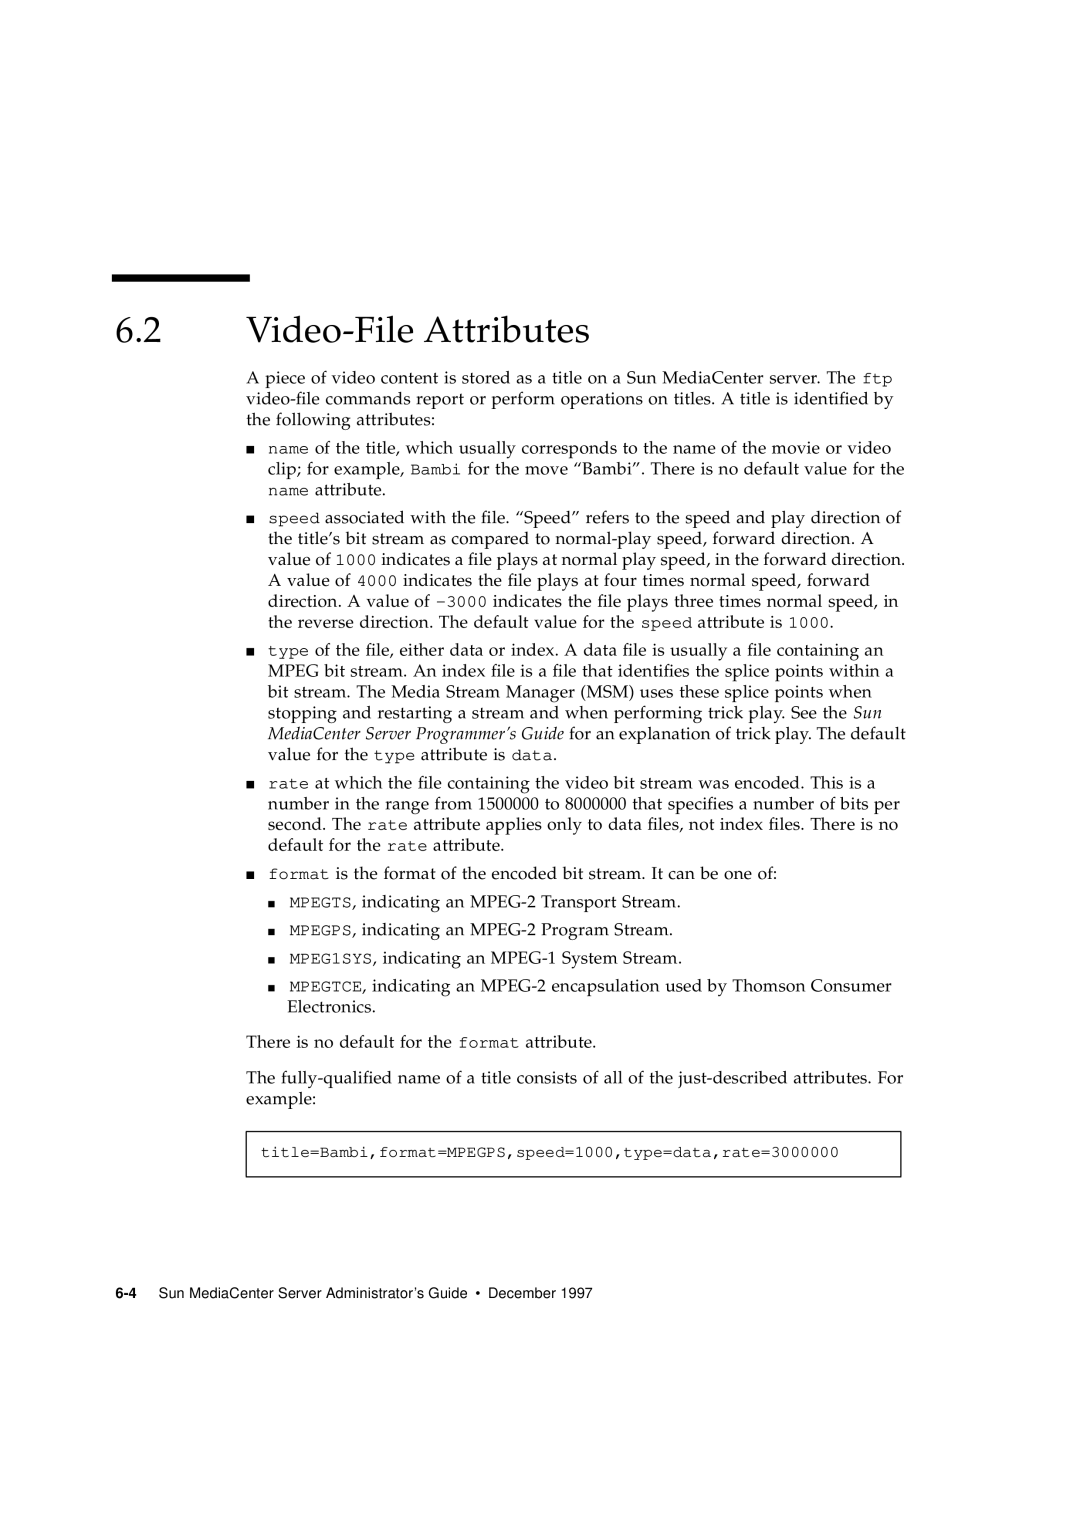 Sun Microsystems 2.1 manual Video-File Attributes 